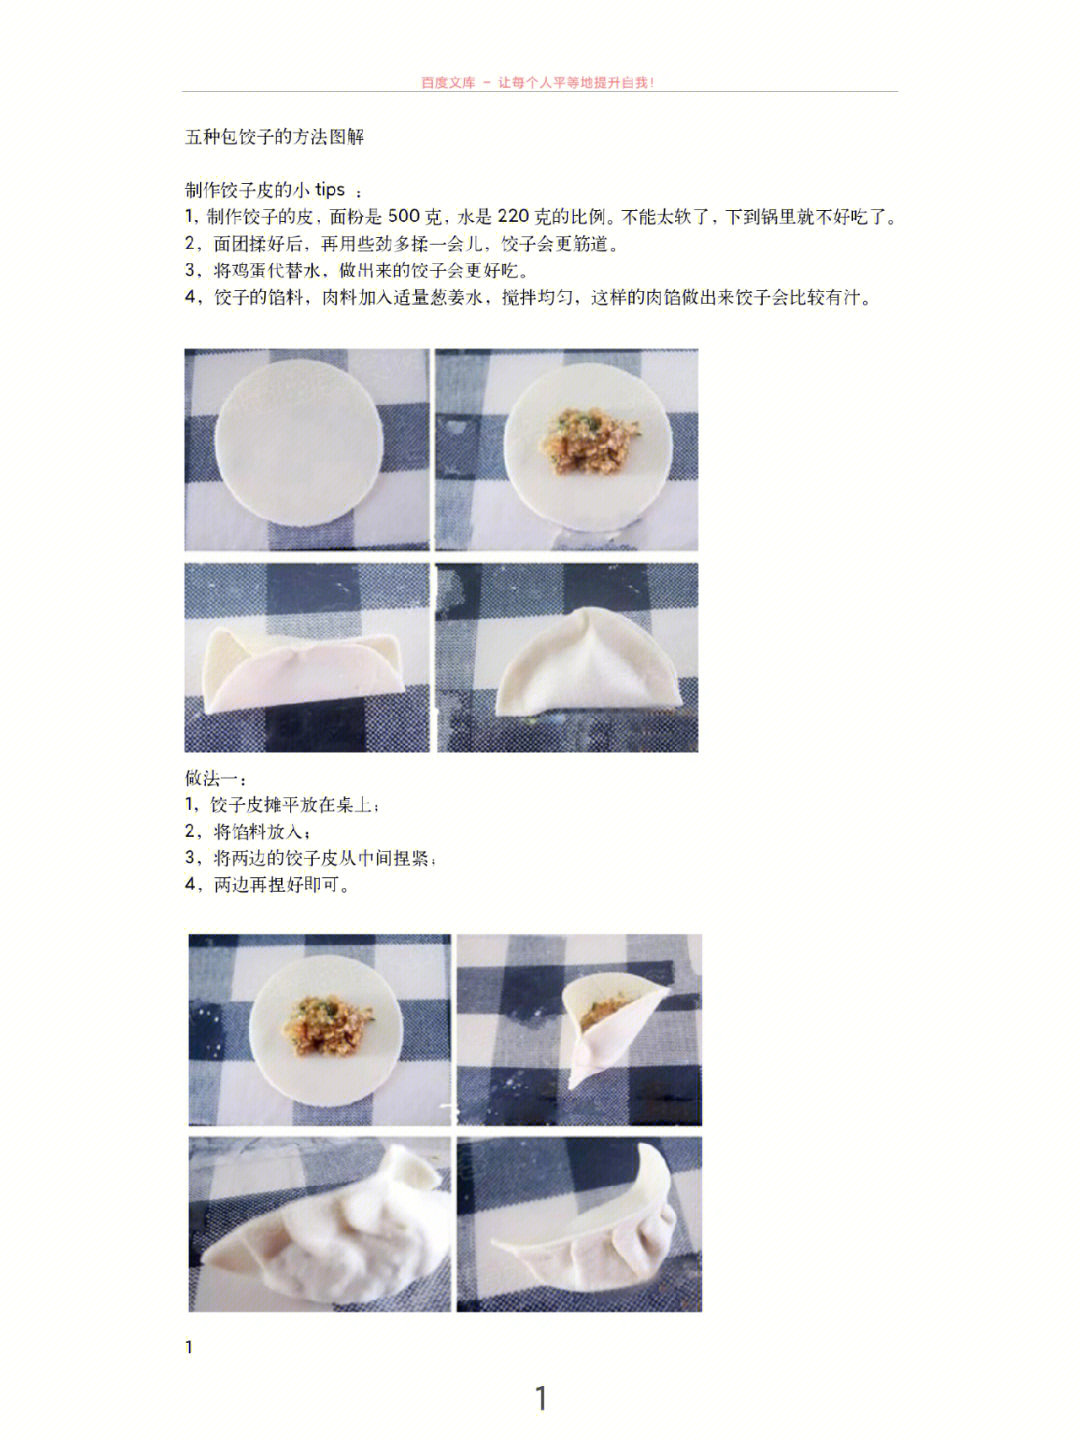 饺子五种包法图解步骤劳动教育课课件素材